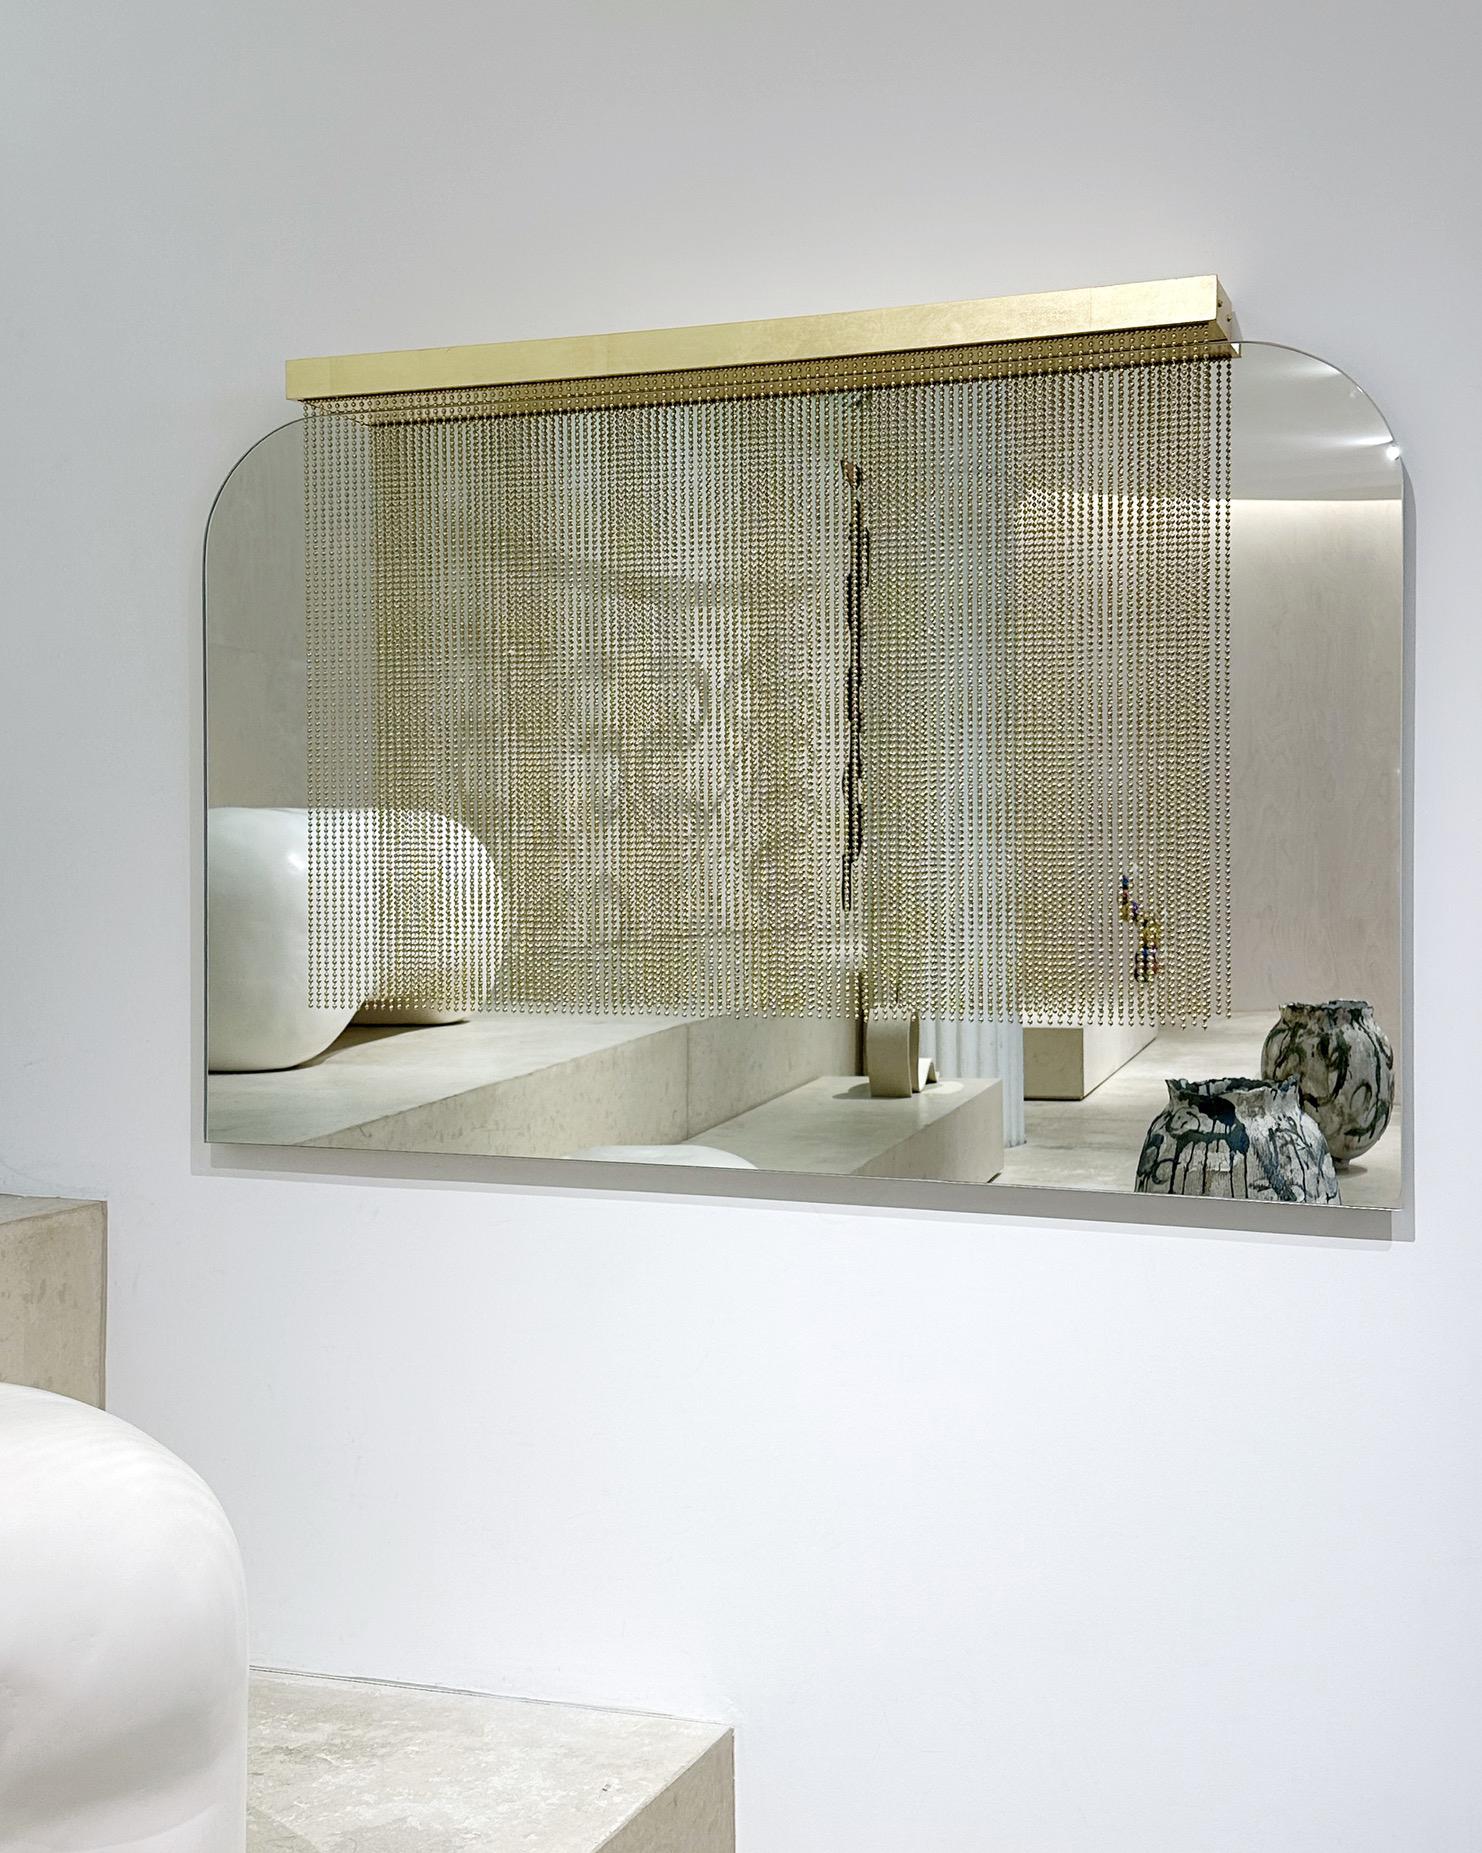 Grand miroir Purdah fabriqué par Indo
Dimensions : D 10,2 x L 121,9 x H 76,2 cm.
MATERIAL : Laiton satiné, verre miroir et feuille d'or.

Chaque pièce est soigneusement fabriquée à la main par notre équipe à l'aide de matériaux naturels et de